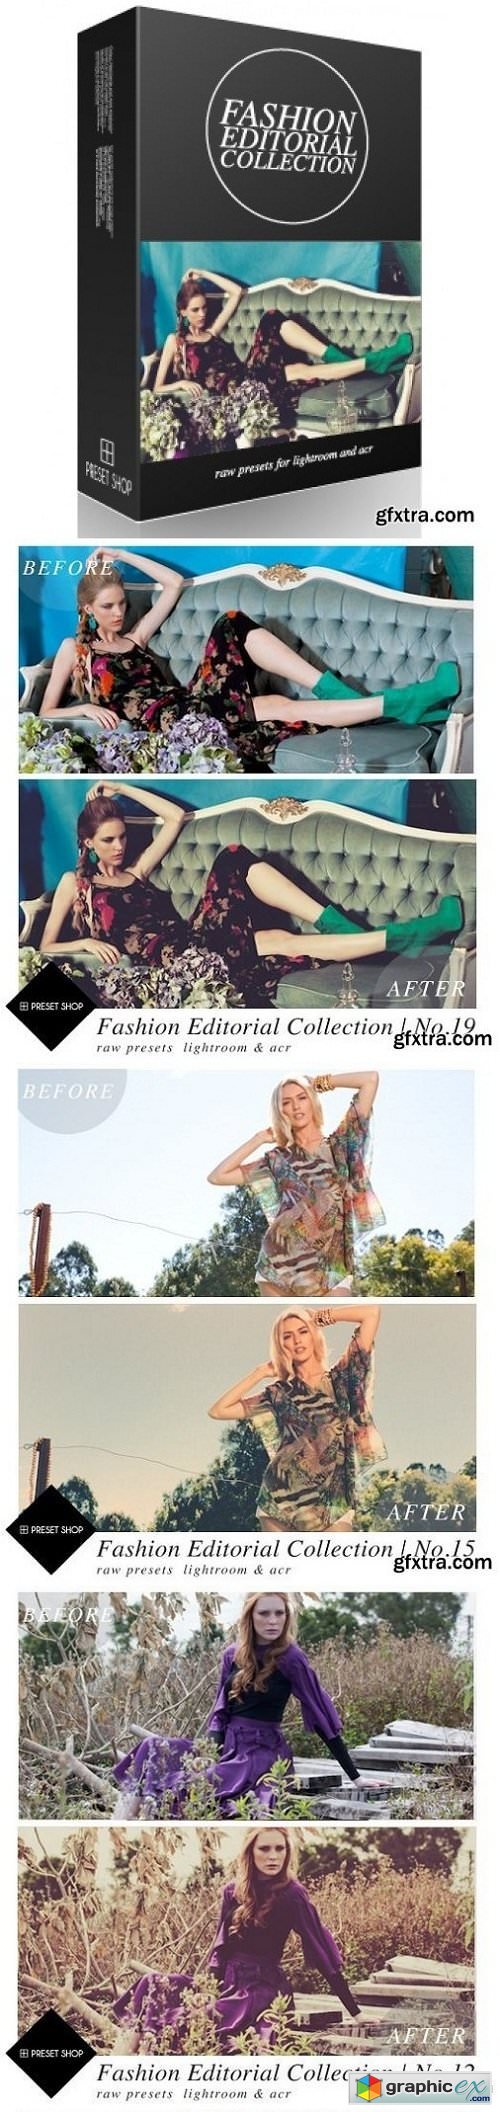 PresetShop - Fashion Editorial Presets Collection Lightroom & ACR